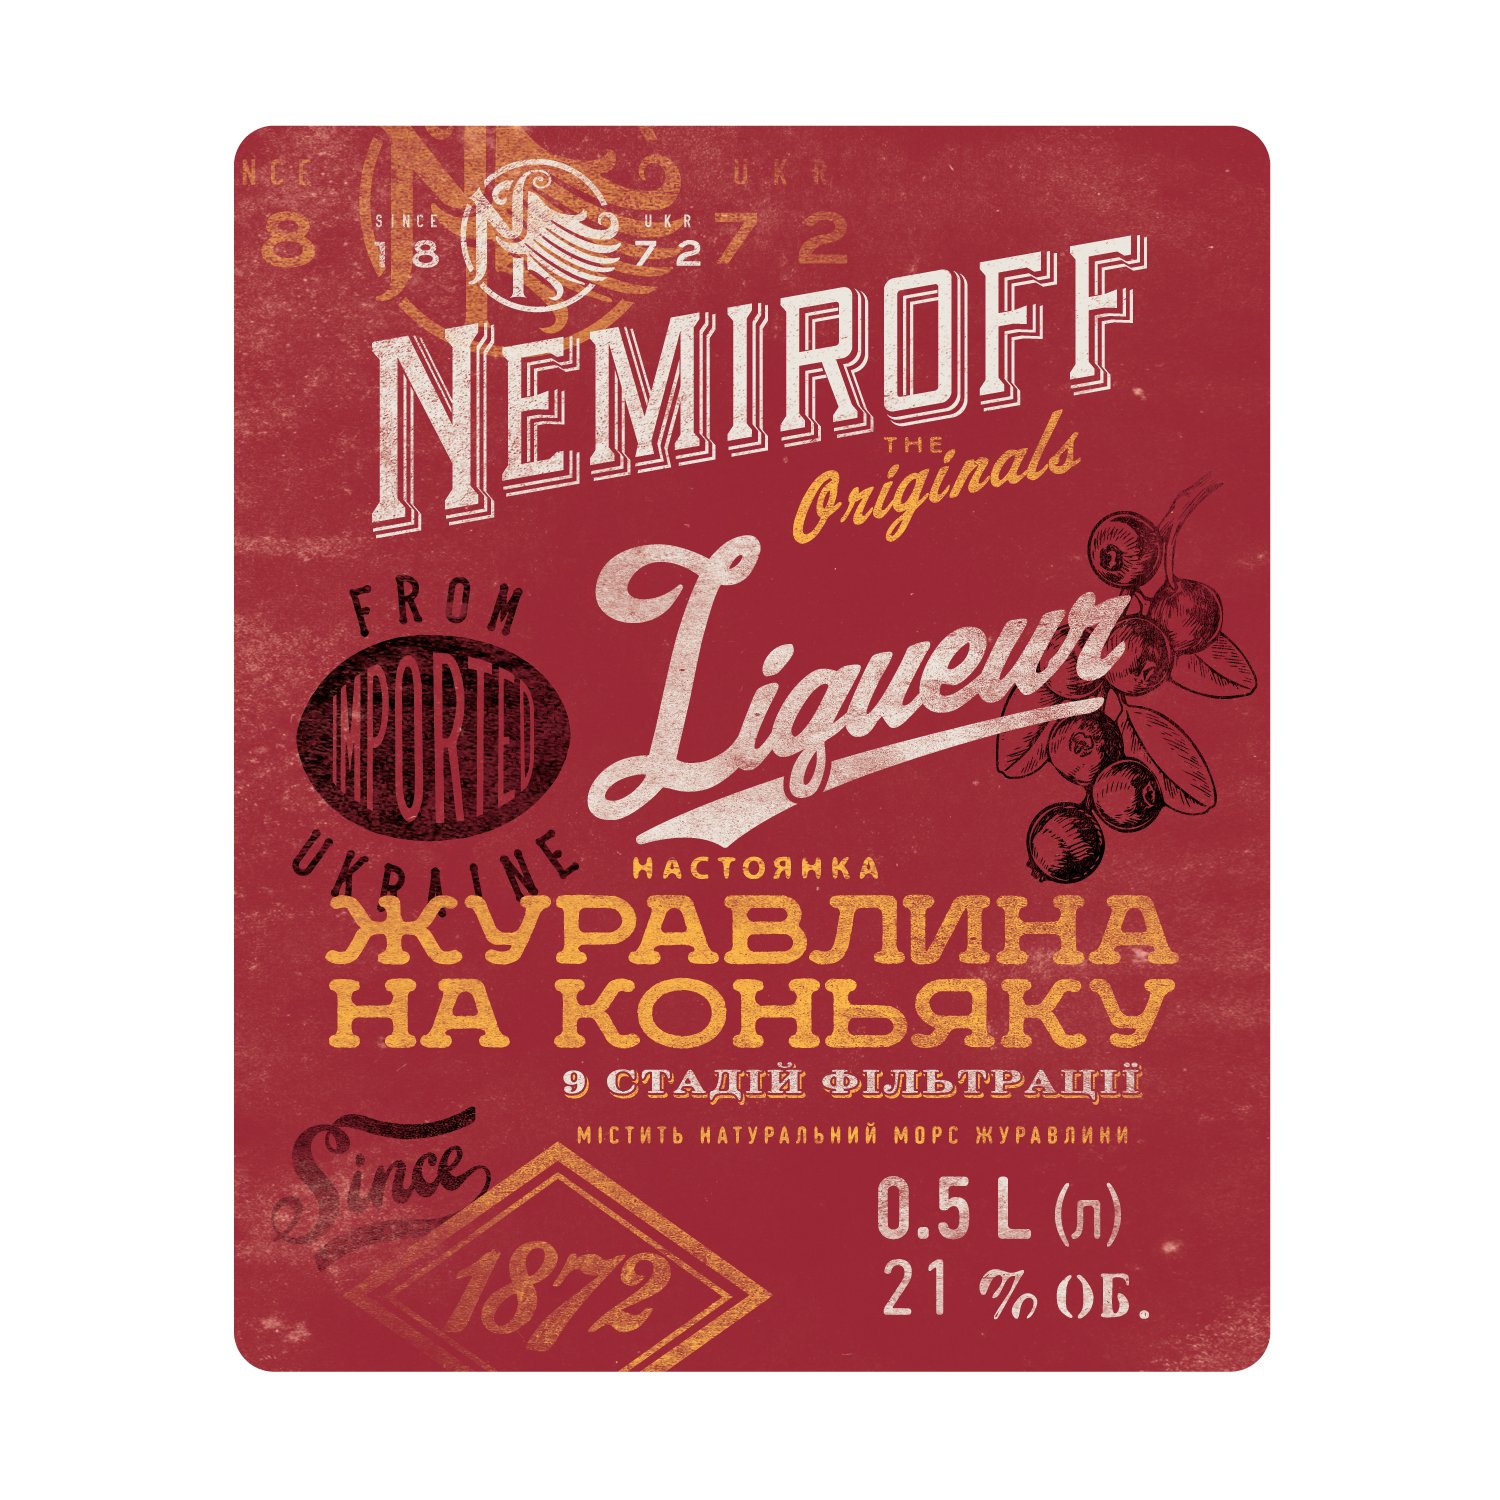 Настойка Nemiroff Originals Клюква на коньяке 21% 0.5 л - фото 4